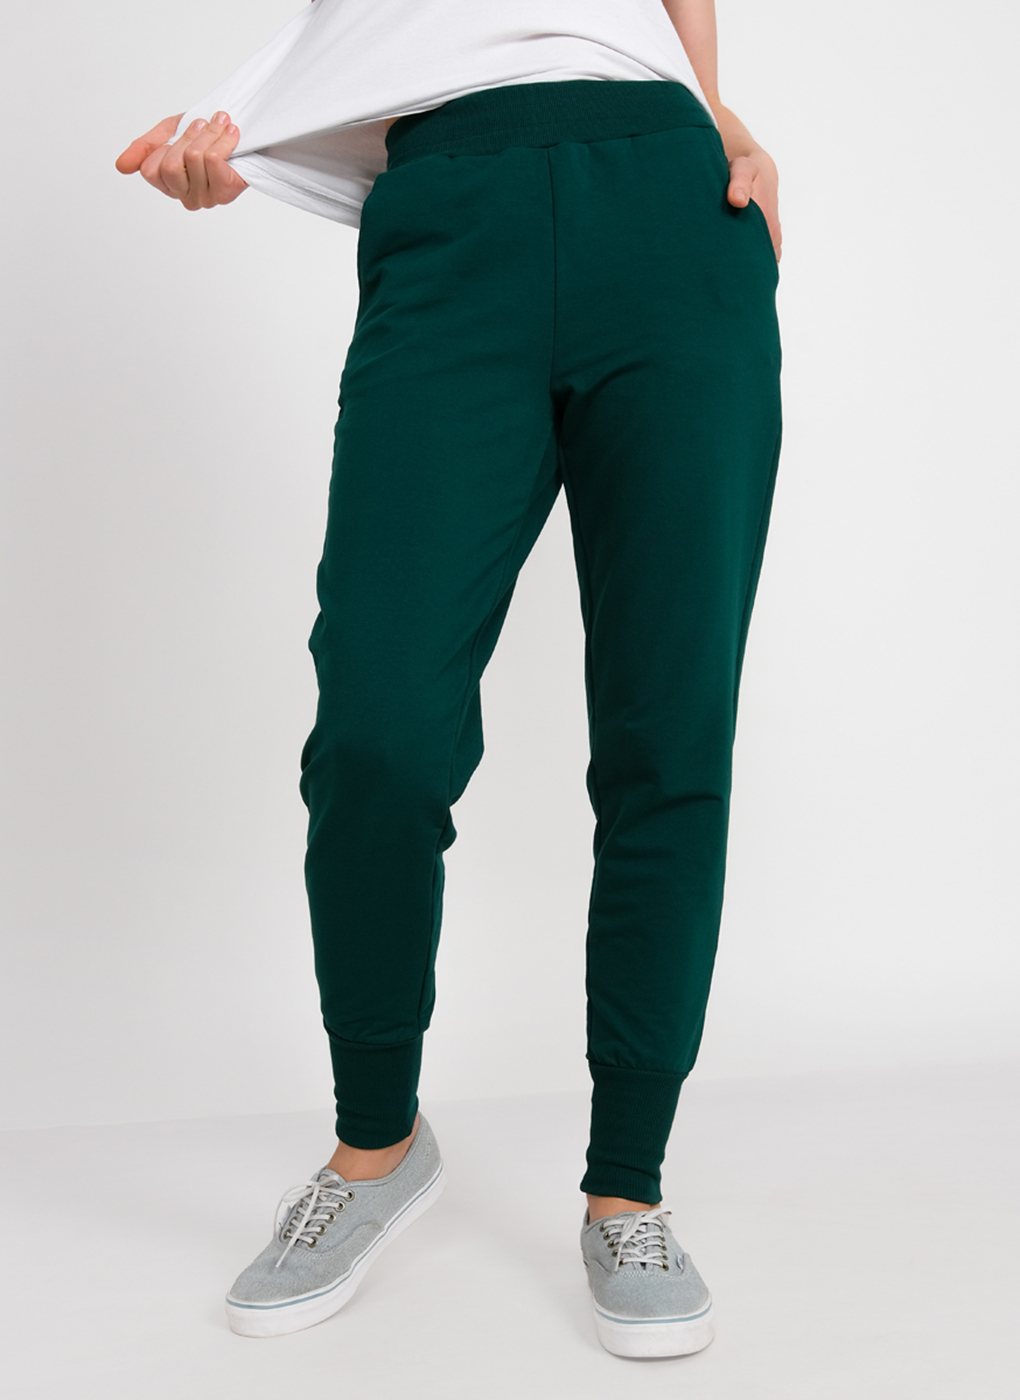 Спортивные брюки женские Каляев 63484 зеленые 46 RU